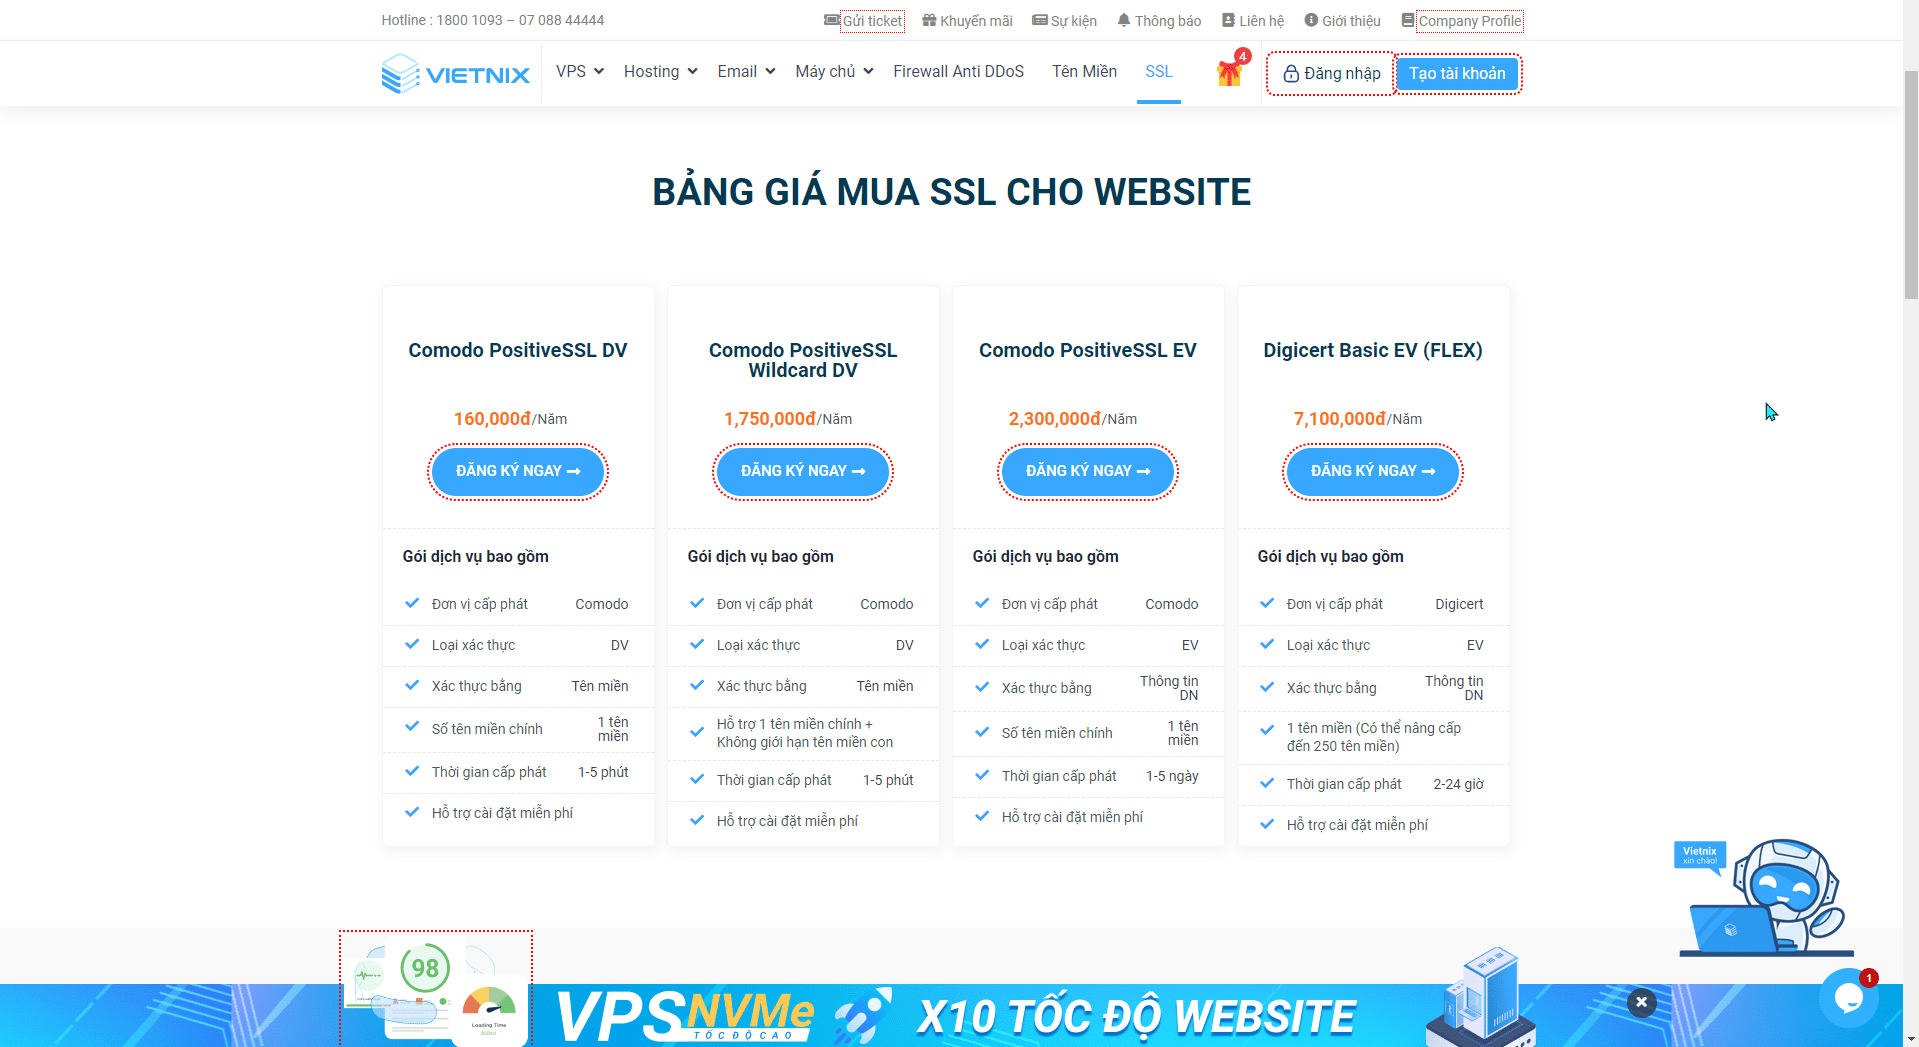 Bảng giá khi mua SSL cho Website tại Vietnix